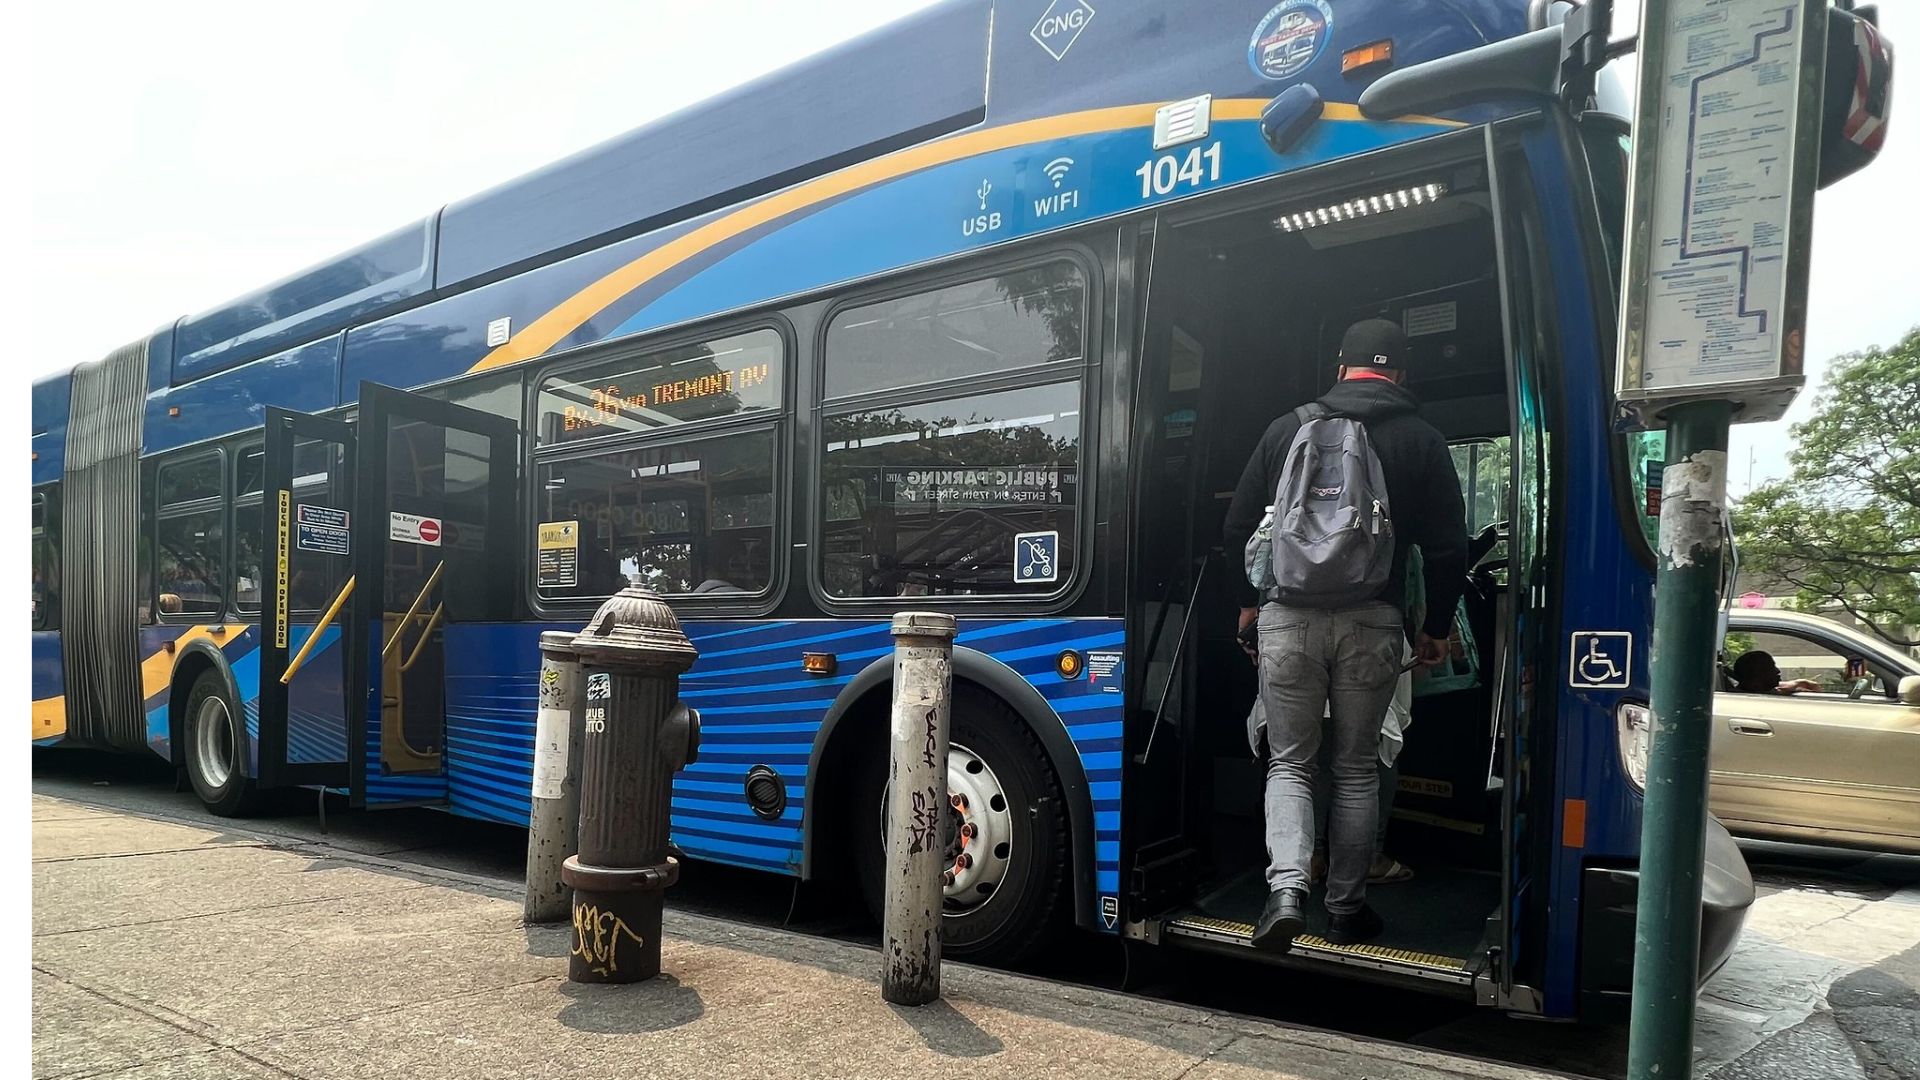 Anuncian cambios para el servicio de autobuses en Queens, incluyendo más rutas